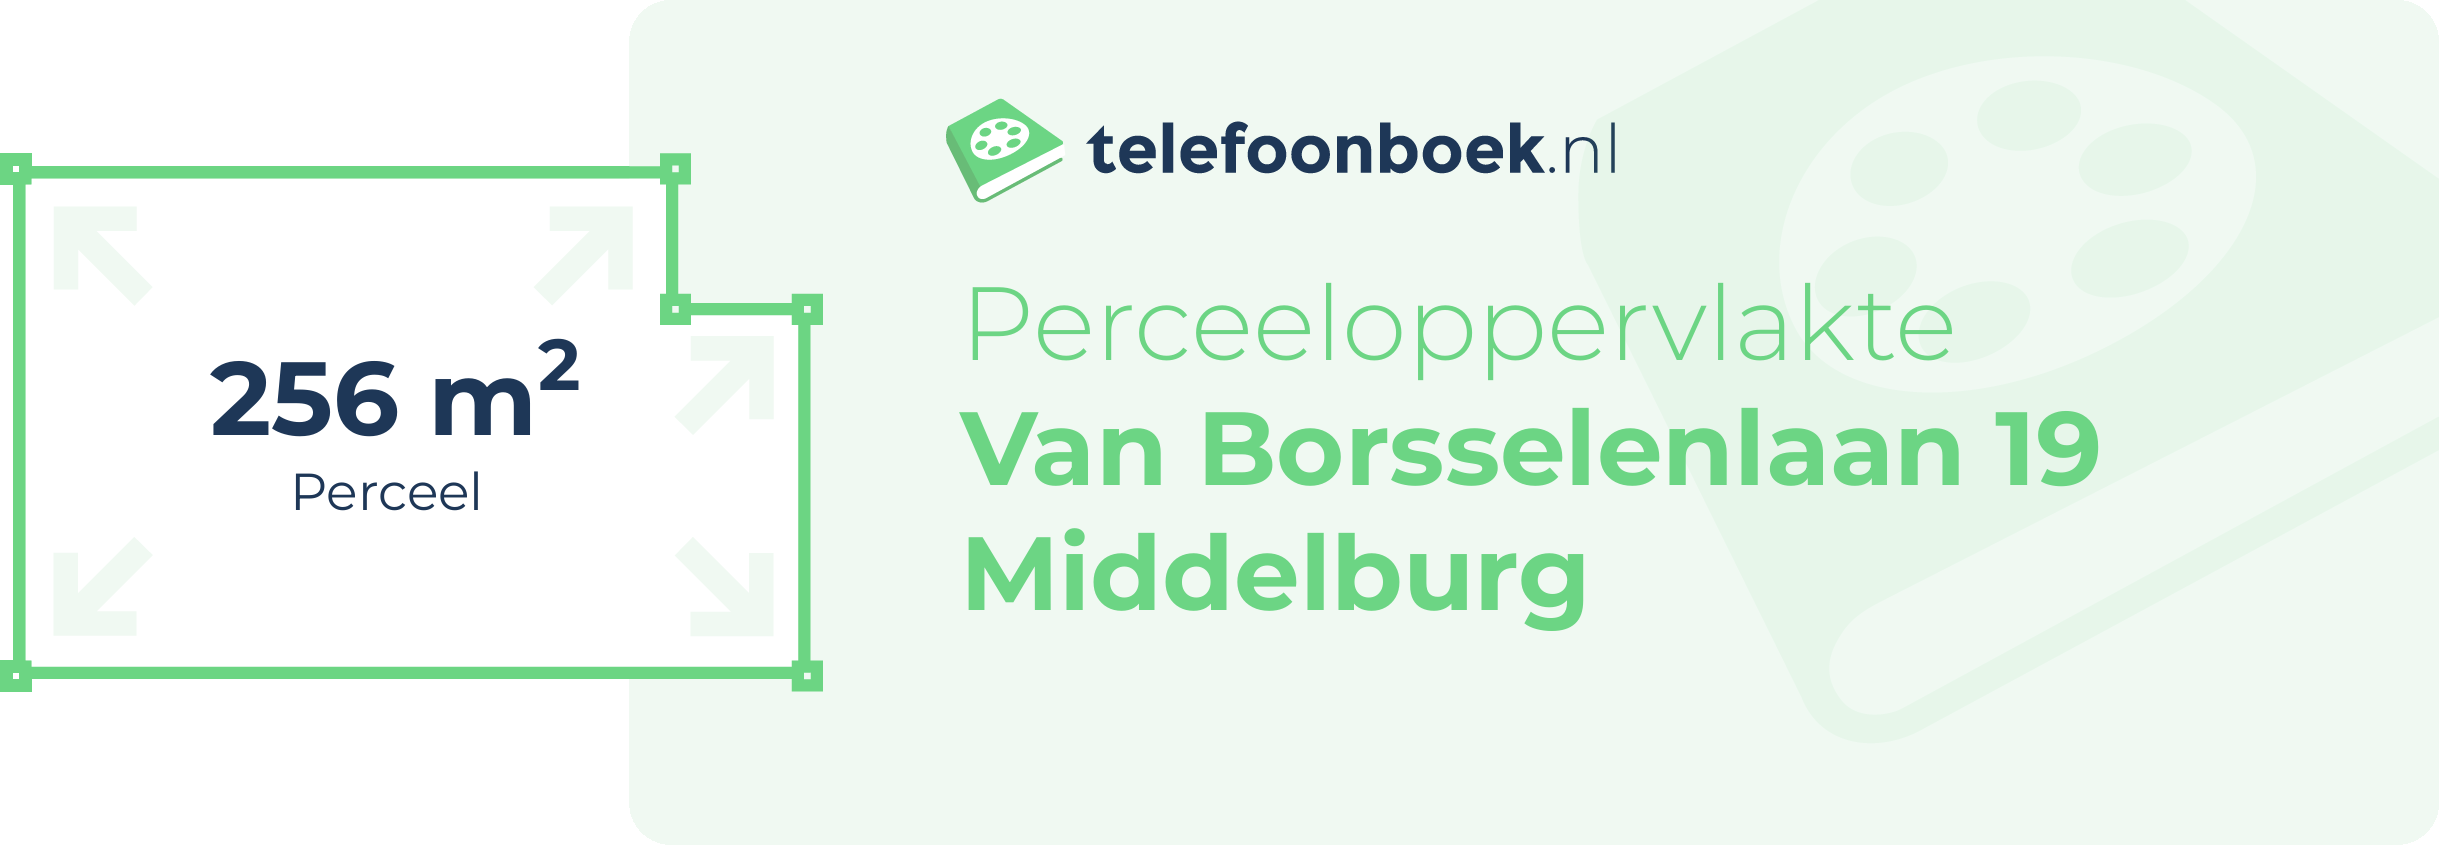 Perceeloppervlakte Van Borsselenlaan 19 Middelburg